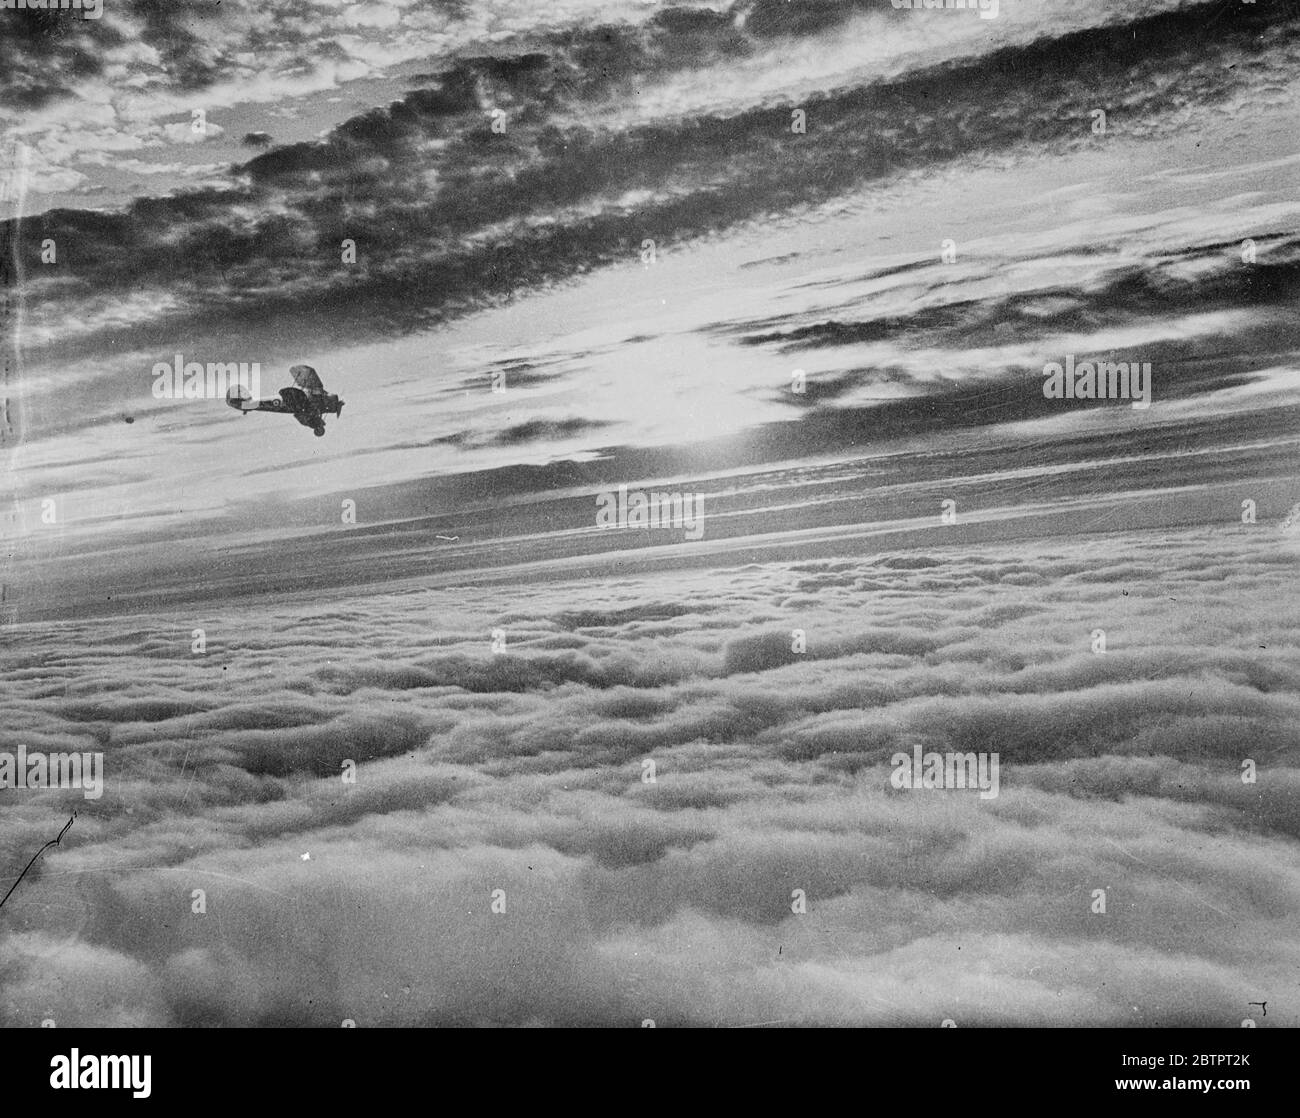 Questa è una nebbia inglese. Questa fotografia, tratta dall'aria sul Devonshire, Inghilterra. Mostra il tramonto su una sponda della nebbia che scese fino a una profondità di 4000 metri. La nebbia si estendeva dai sobborghi di Londra a Plymouth per circa 200 chilometri. La foto è stata fatta da un fotografo di notizie del pianeta, girando su un aereo speciale da un incarico a Plymouth. Foto mostra un gladiatore Gloster combattente della RAF silhouette al tramonto. 20 ottobre 1937 Foto Stock